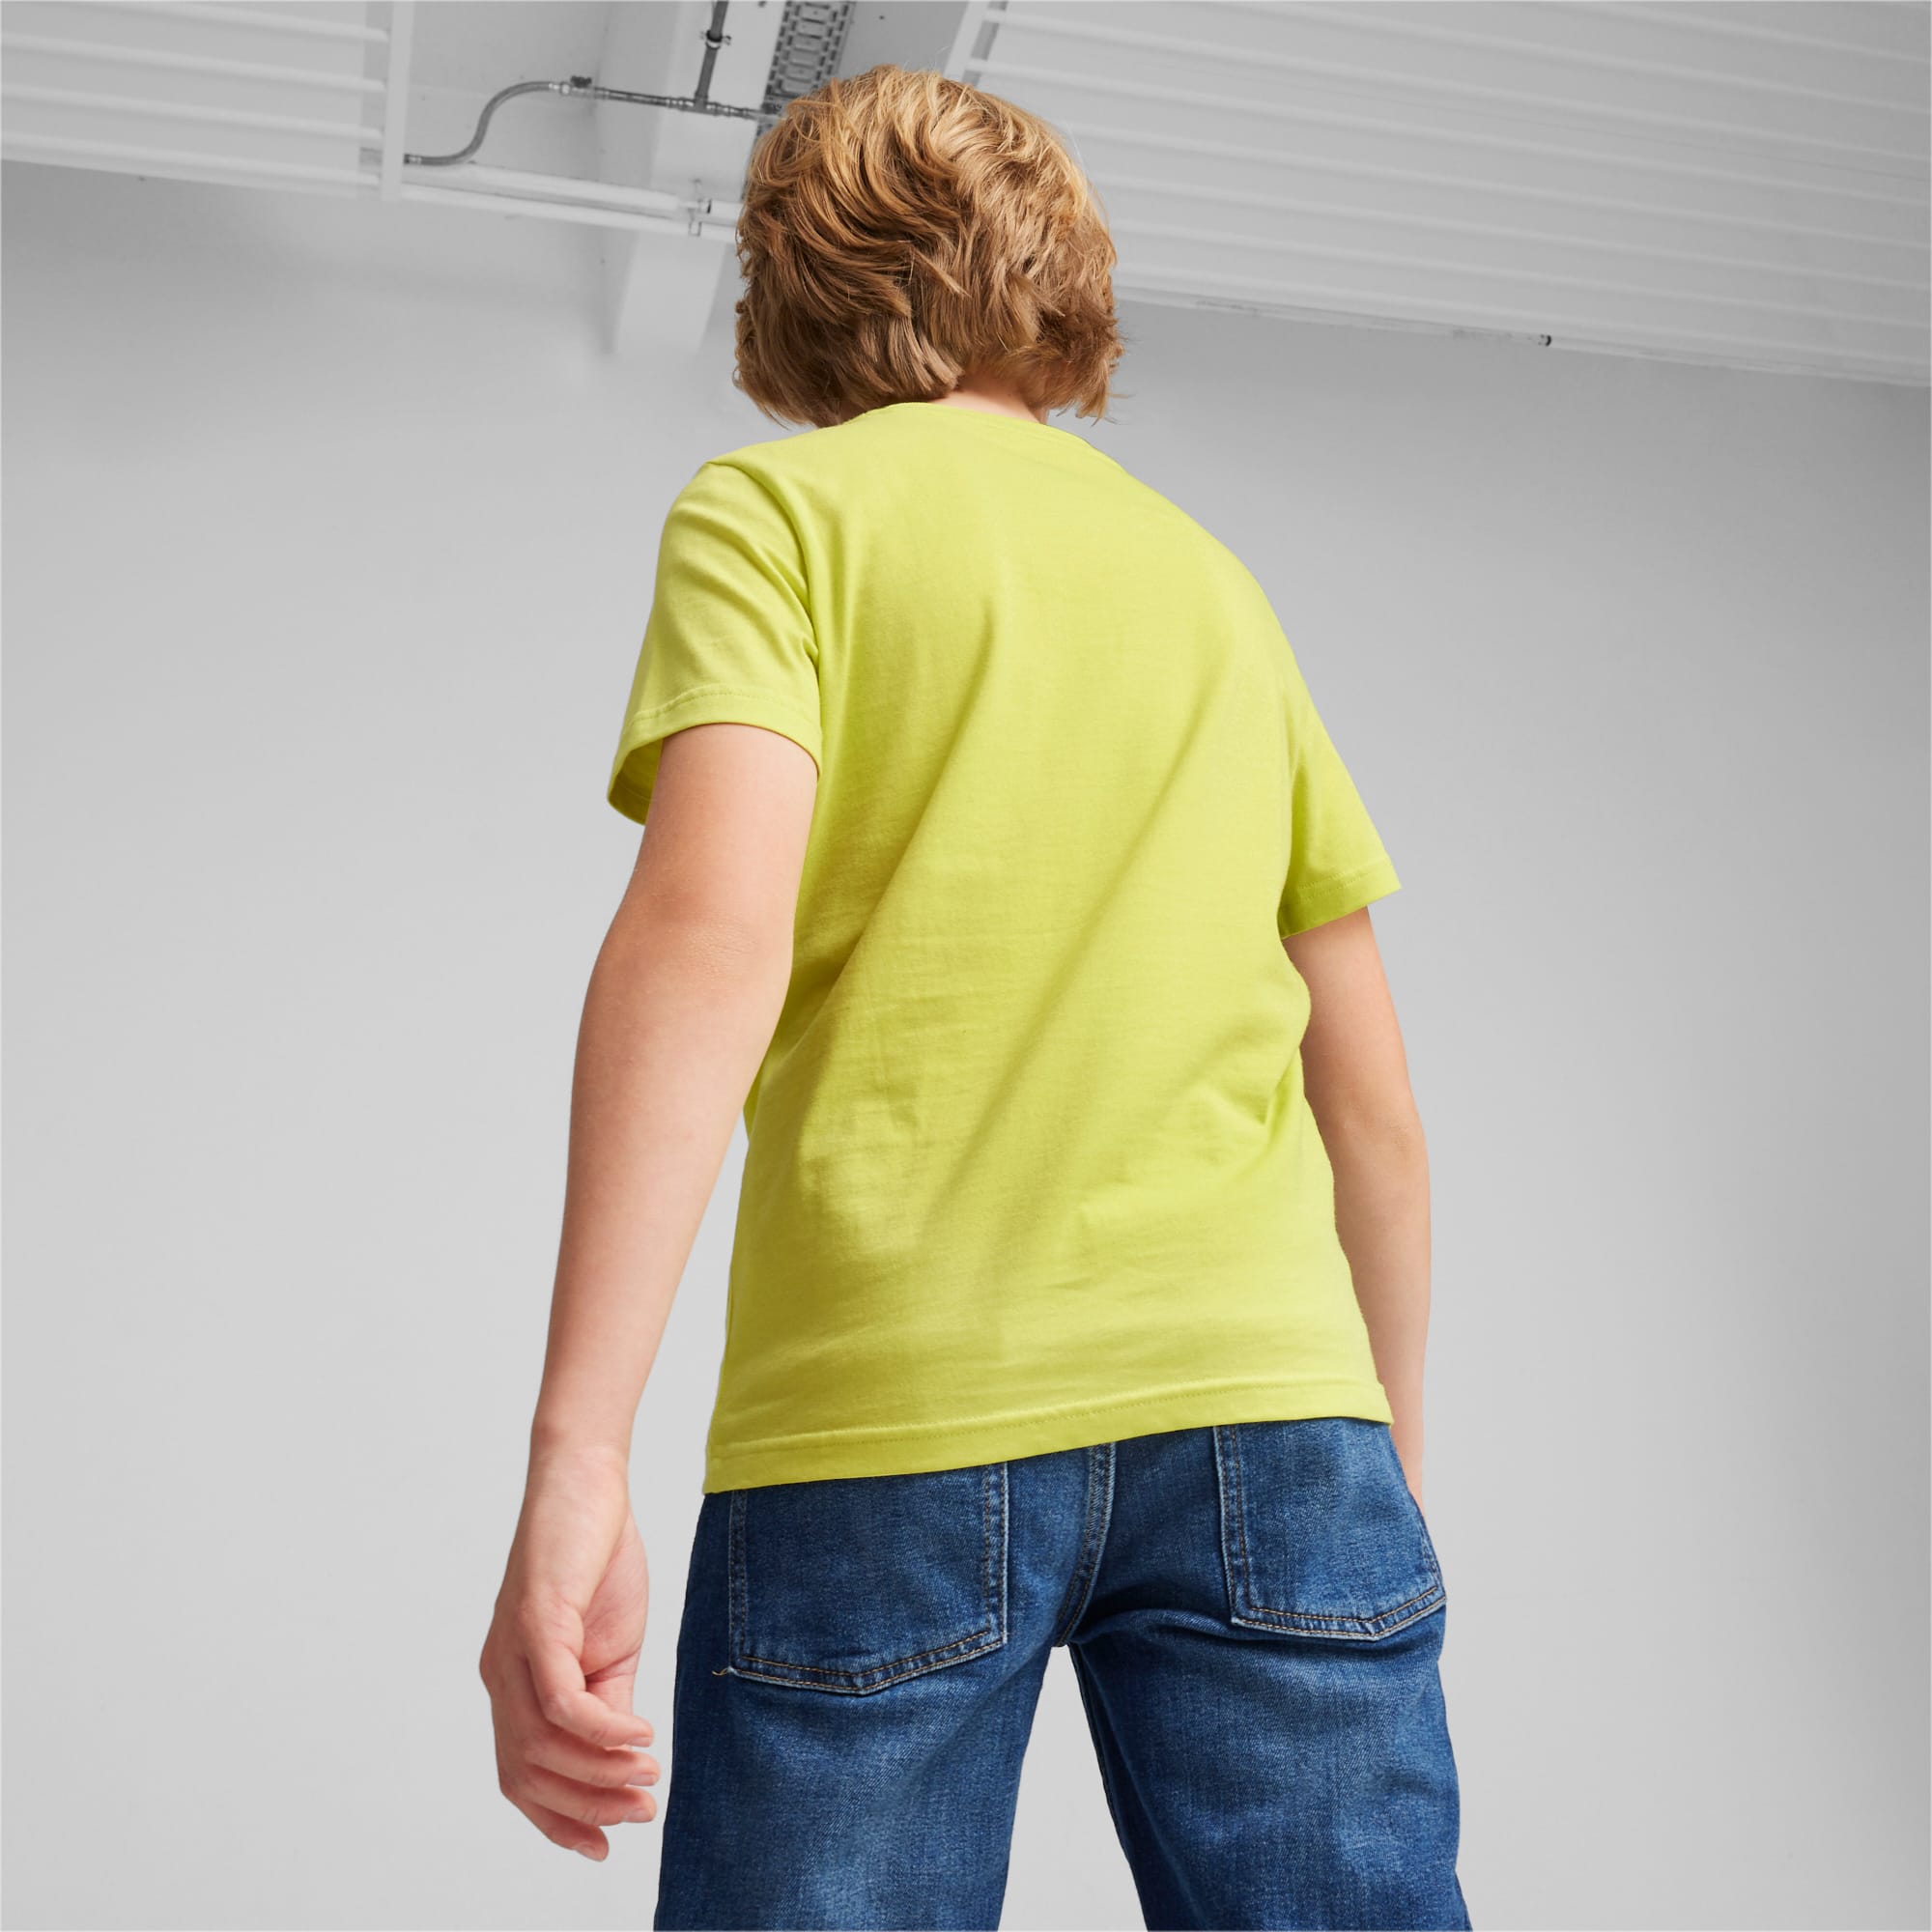 PUMA Power T-Shirt, Lime Sheen, Size 128, Clothing